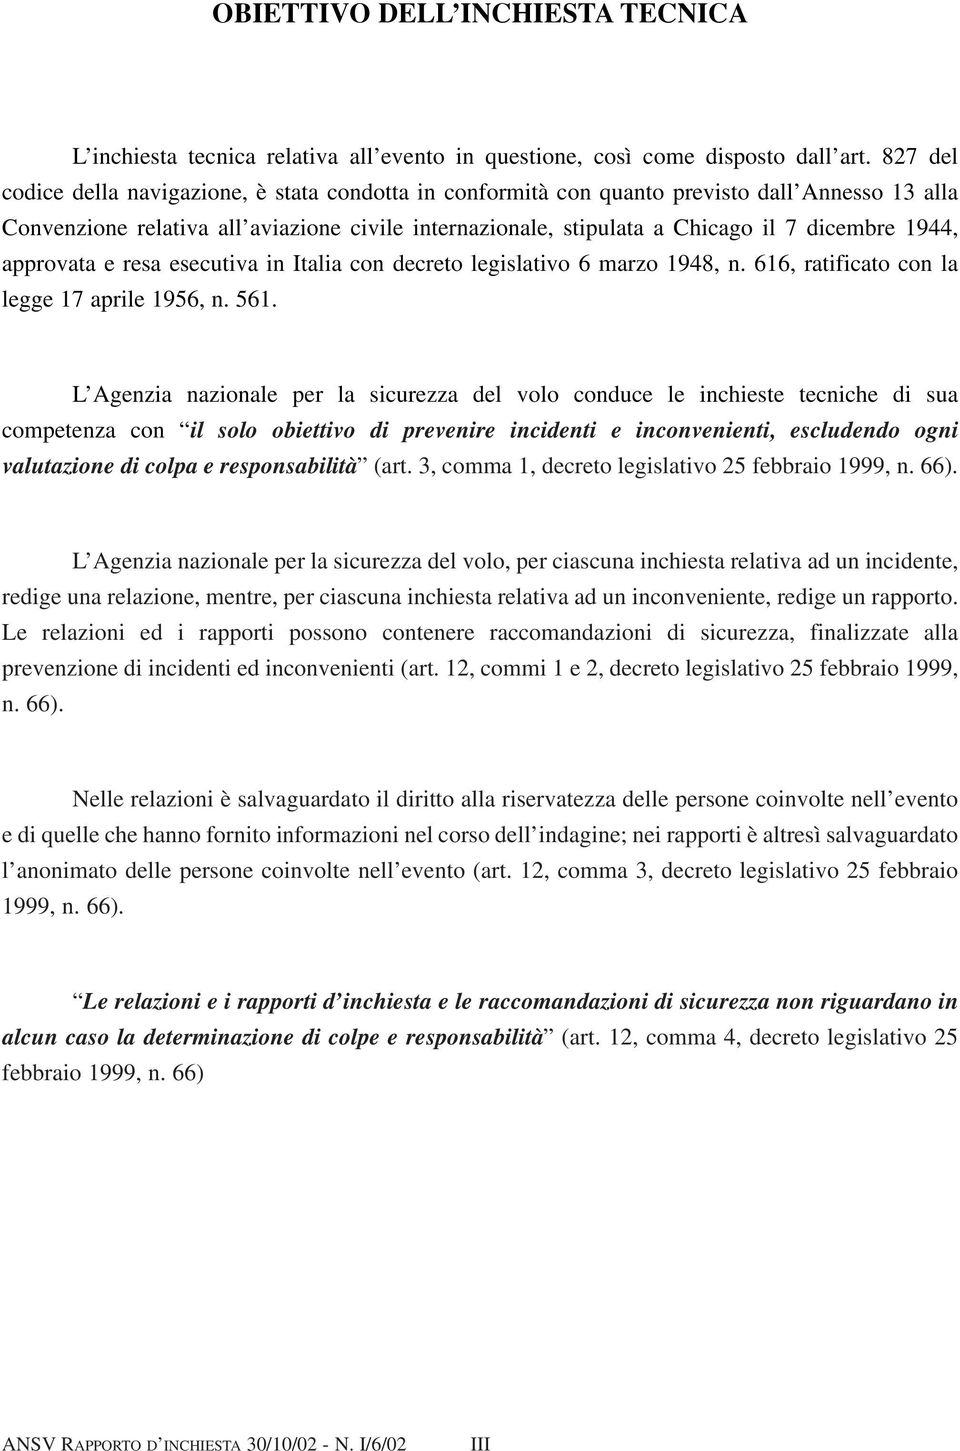 1944, approvata e resa esecutiva in Italia con decreto legislativo 6 marzo 1948, n. 616, ratificato con la legge 17 aprile 1956, n. 561.